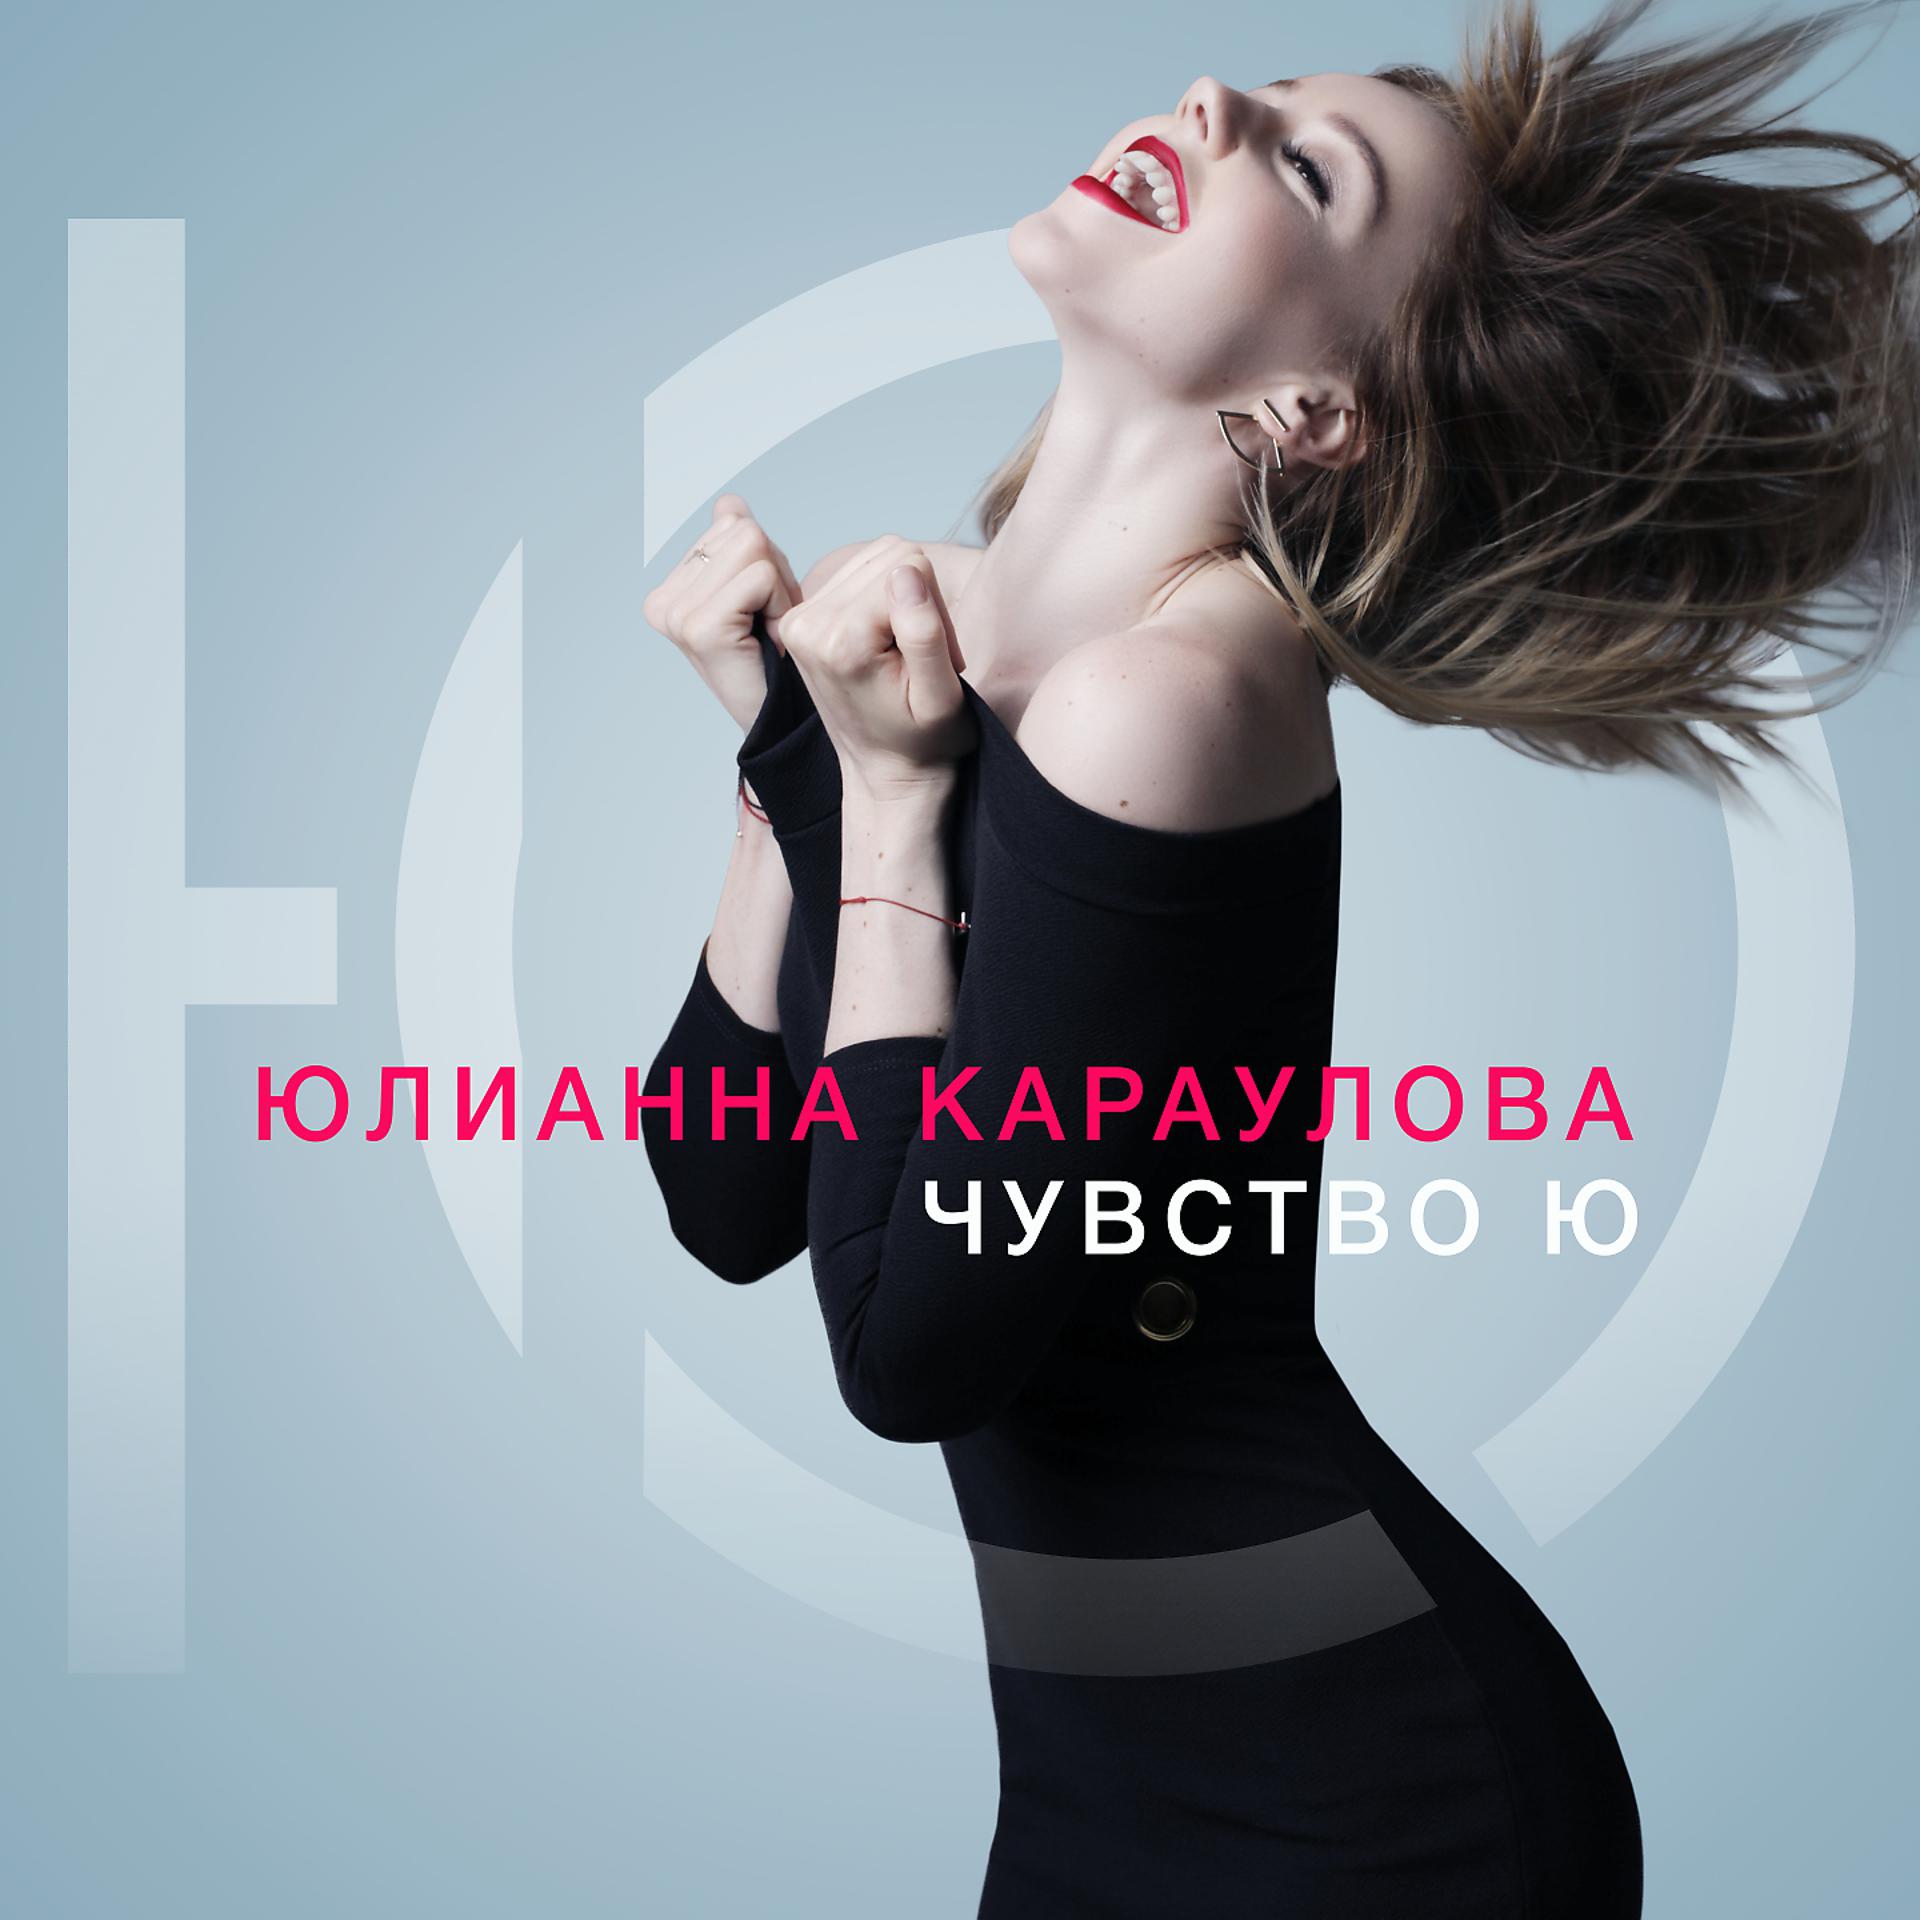 Постер к треку Юлианна Караулова - Больше никогда